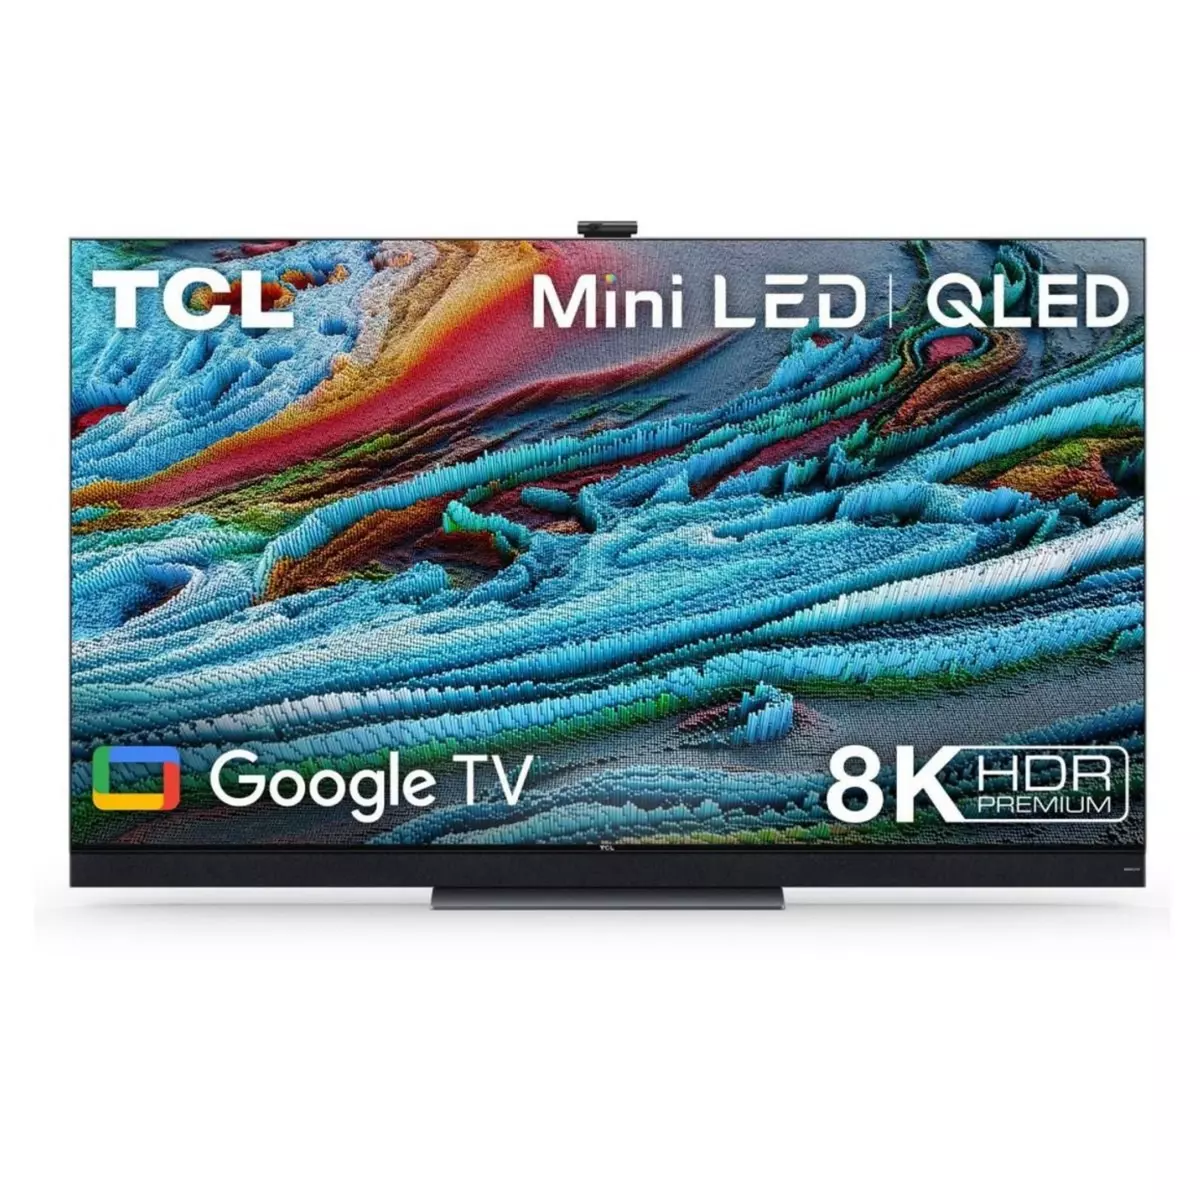 TCL 65X925 TV Mini LED QLED 8K UHD 164 cm Google TV